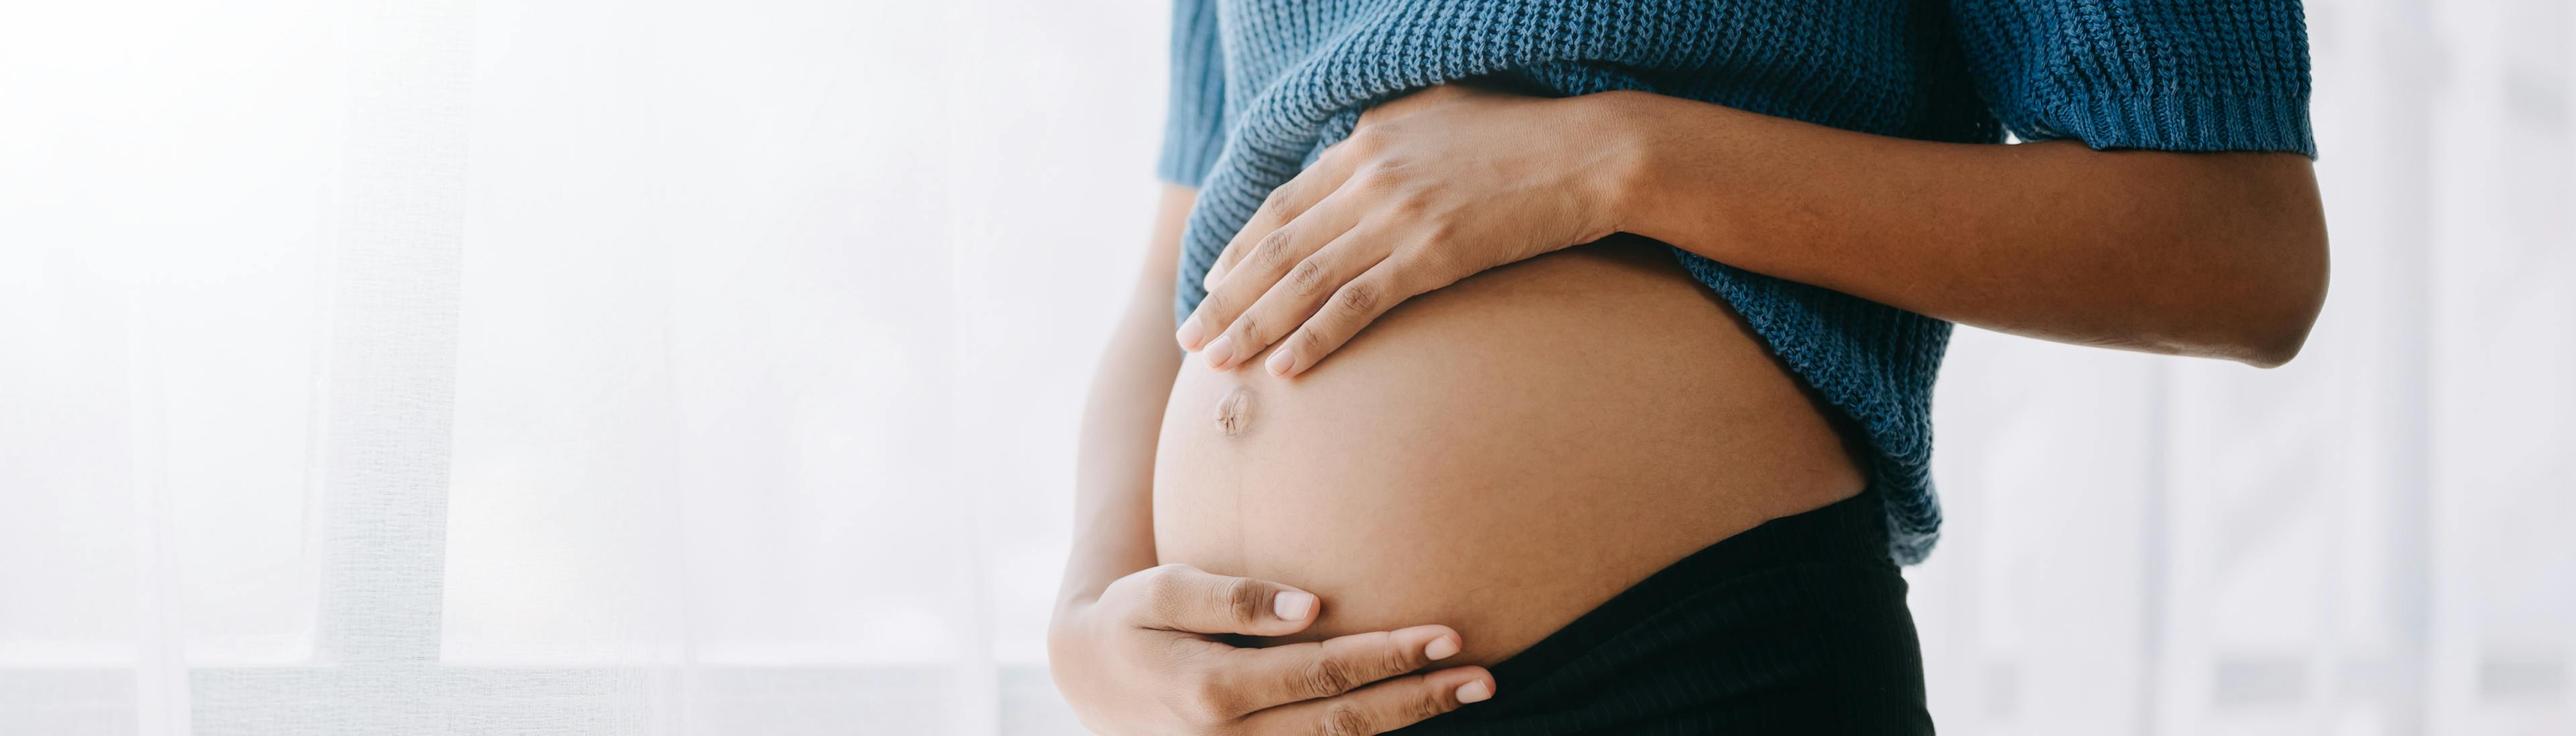 Comment lutter contre les hémorroïdes pendant sa grossesse ? | Boiron